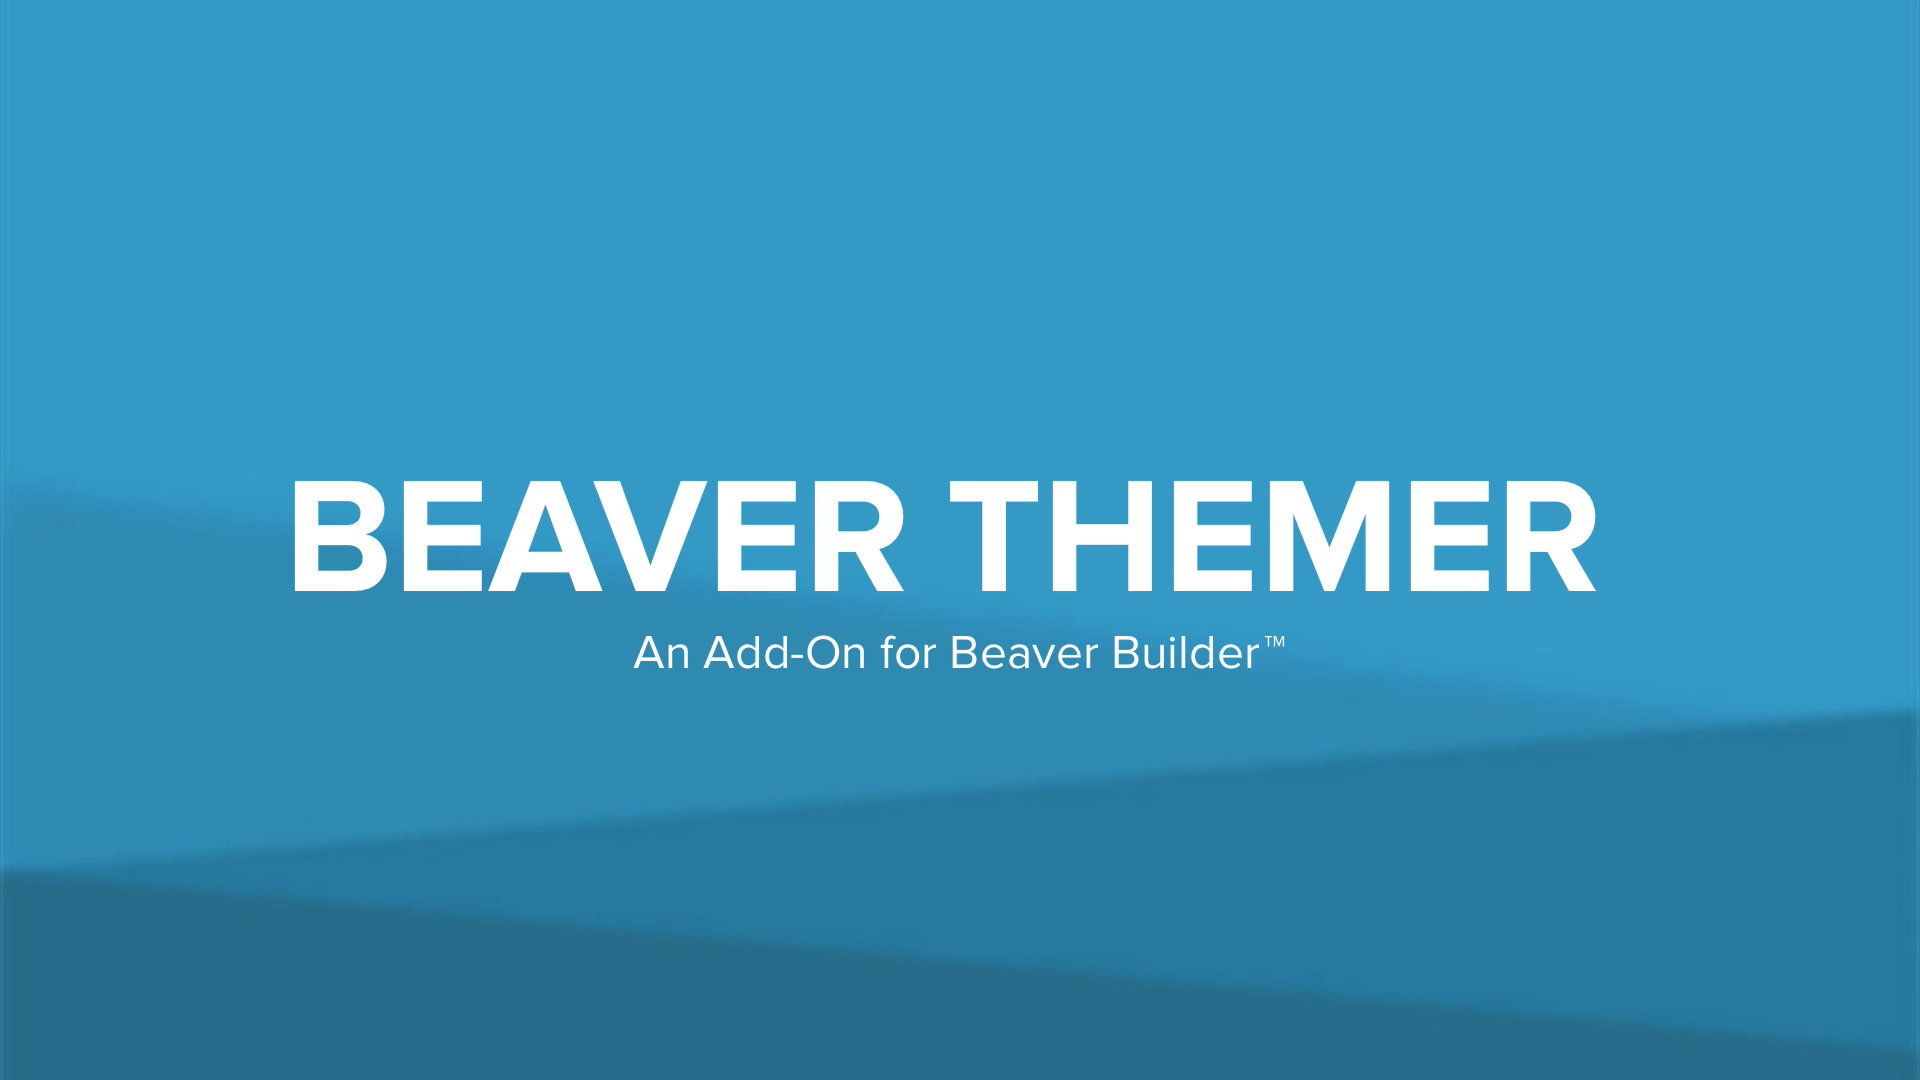 Beaver Themer - An Add-On for Beaver Builder